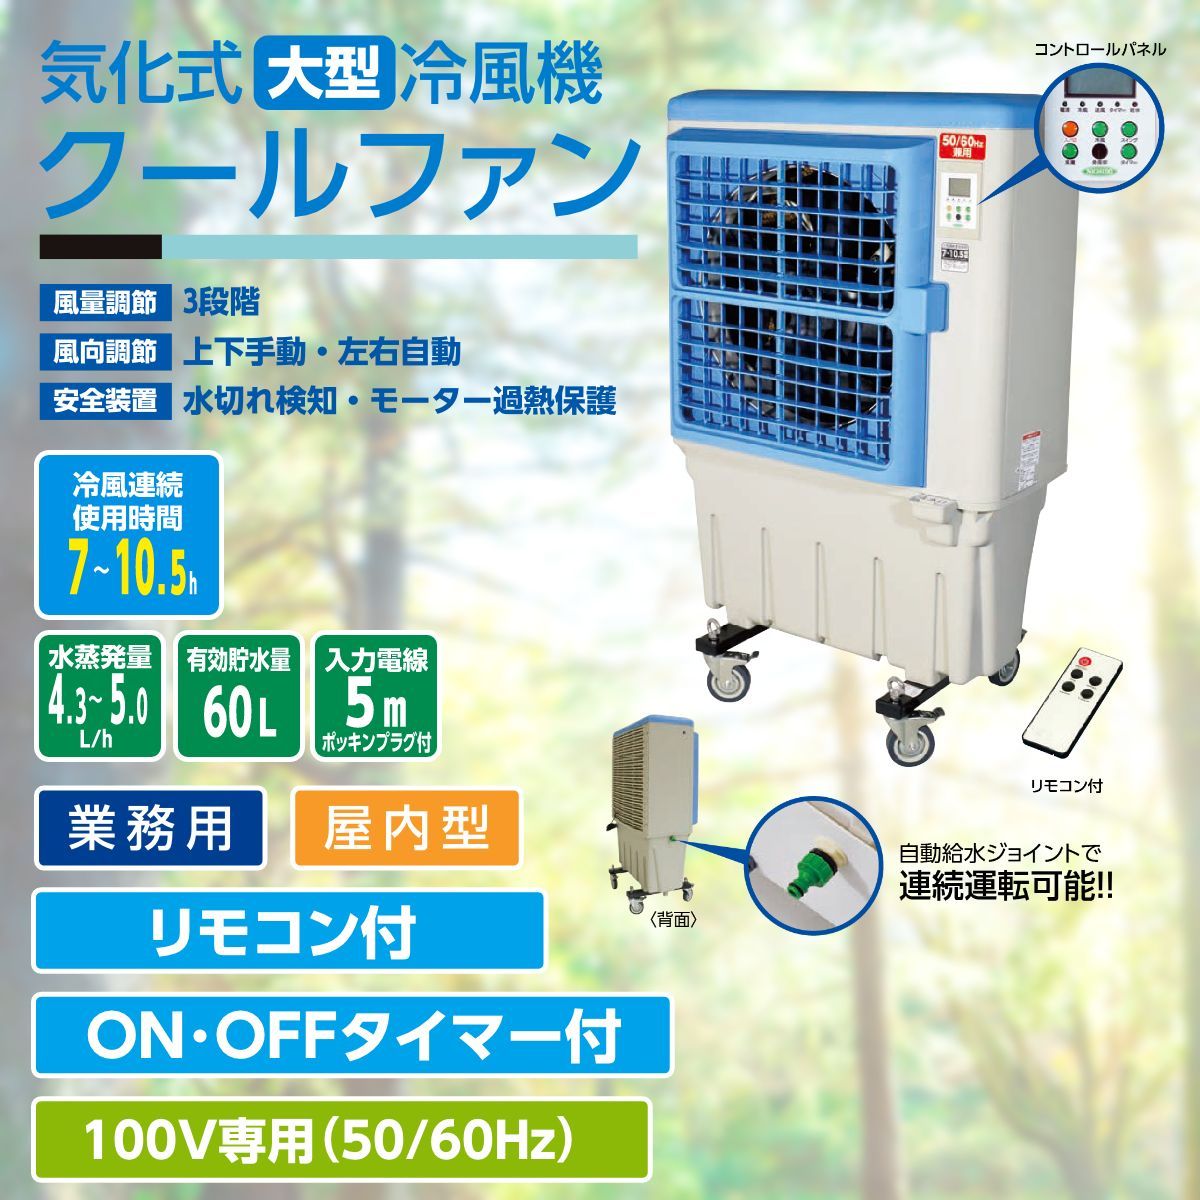 【メーカー直送】 業務用 冷風扇 気化式 大型 冷風機 クールファン 